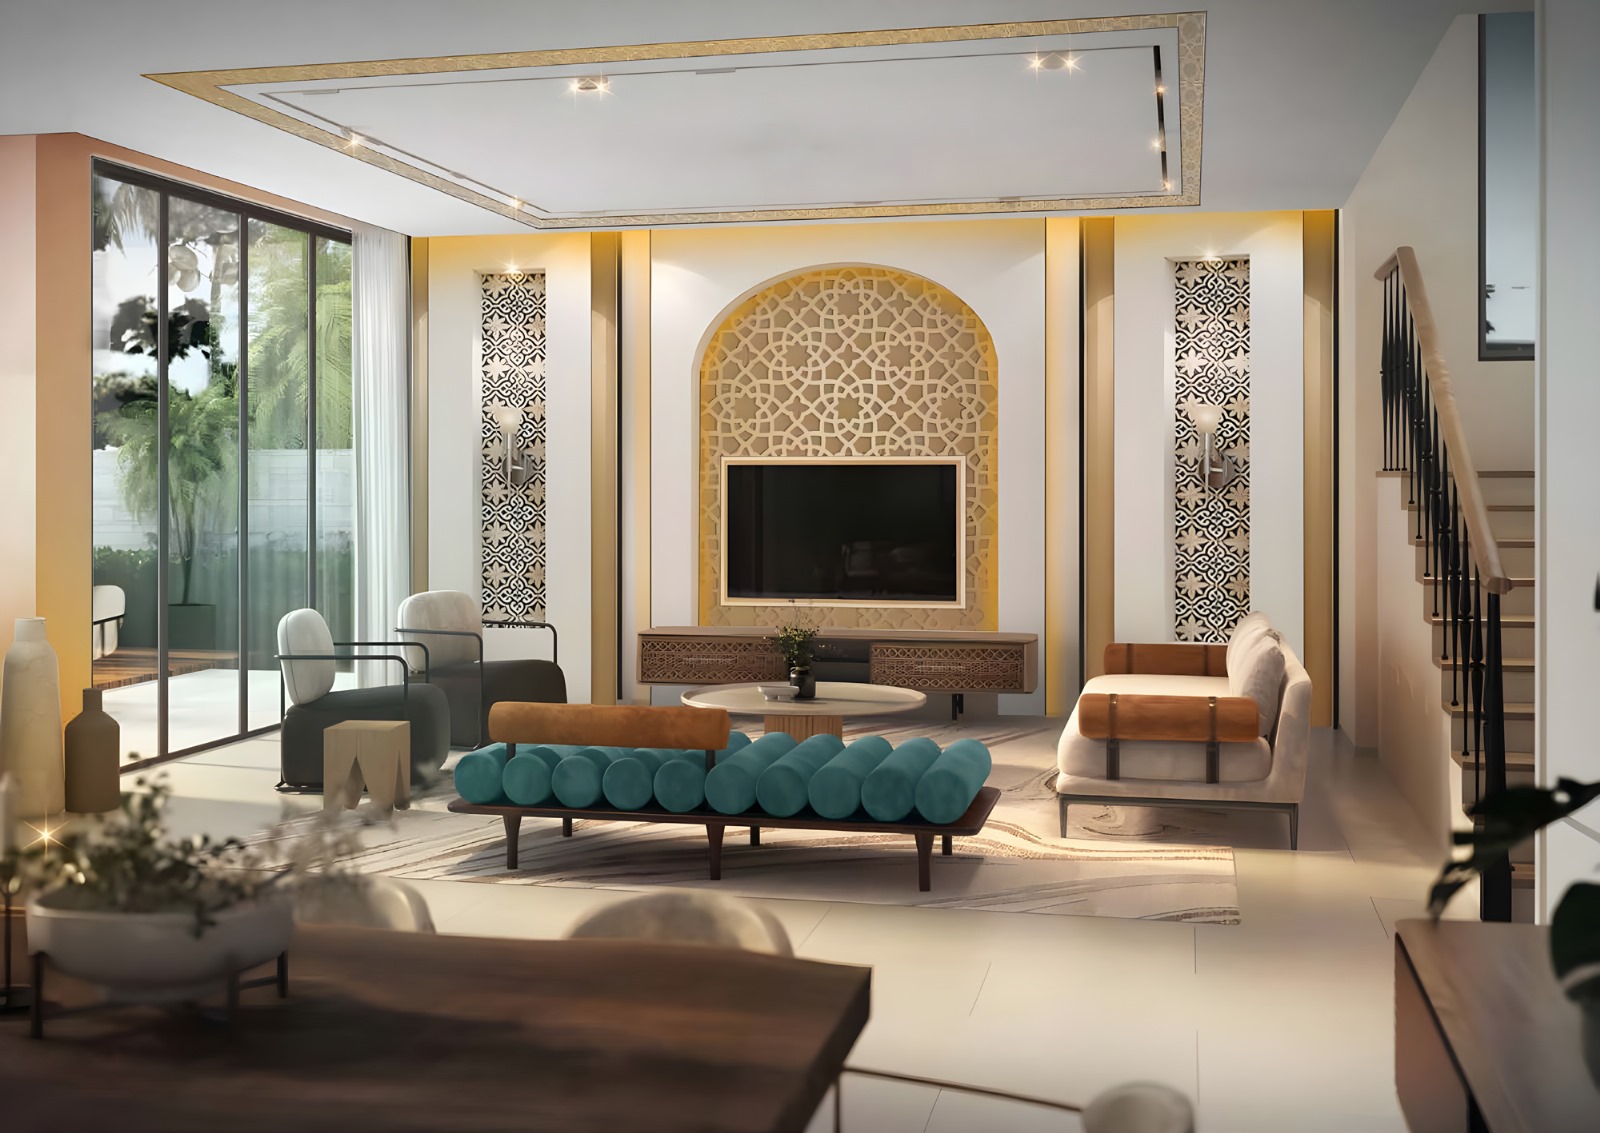 Achat et vente immobilier VILLAS DE LUXE MOROCCO by DAMAC LAGOONS à DUBAILAND DUBAI by JINVESTY agence immobilière DUBAI DIRECT PROMOTEUR Investir à DUBAI